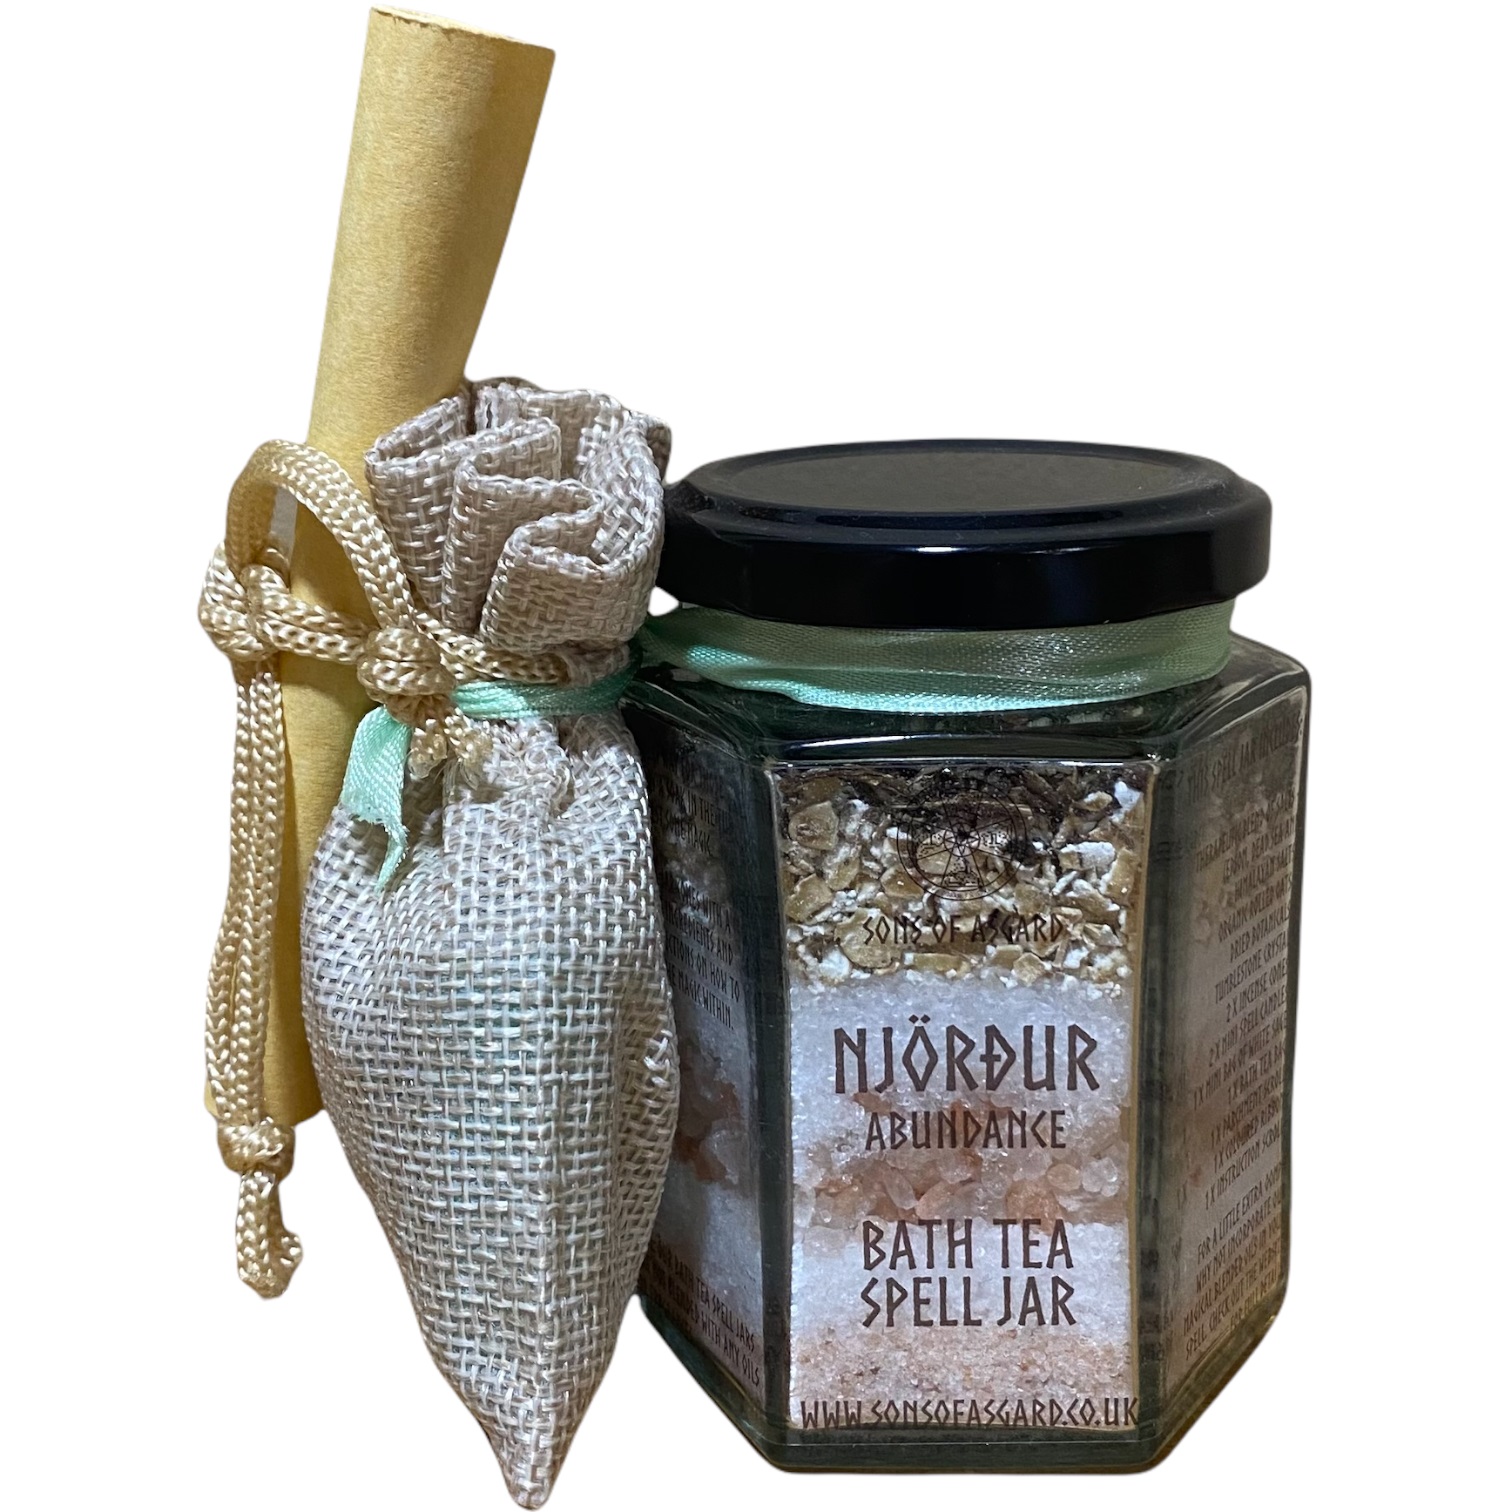 Njordur (Abundance) - Bath Tea Spell Jar